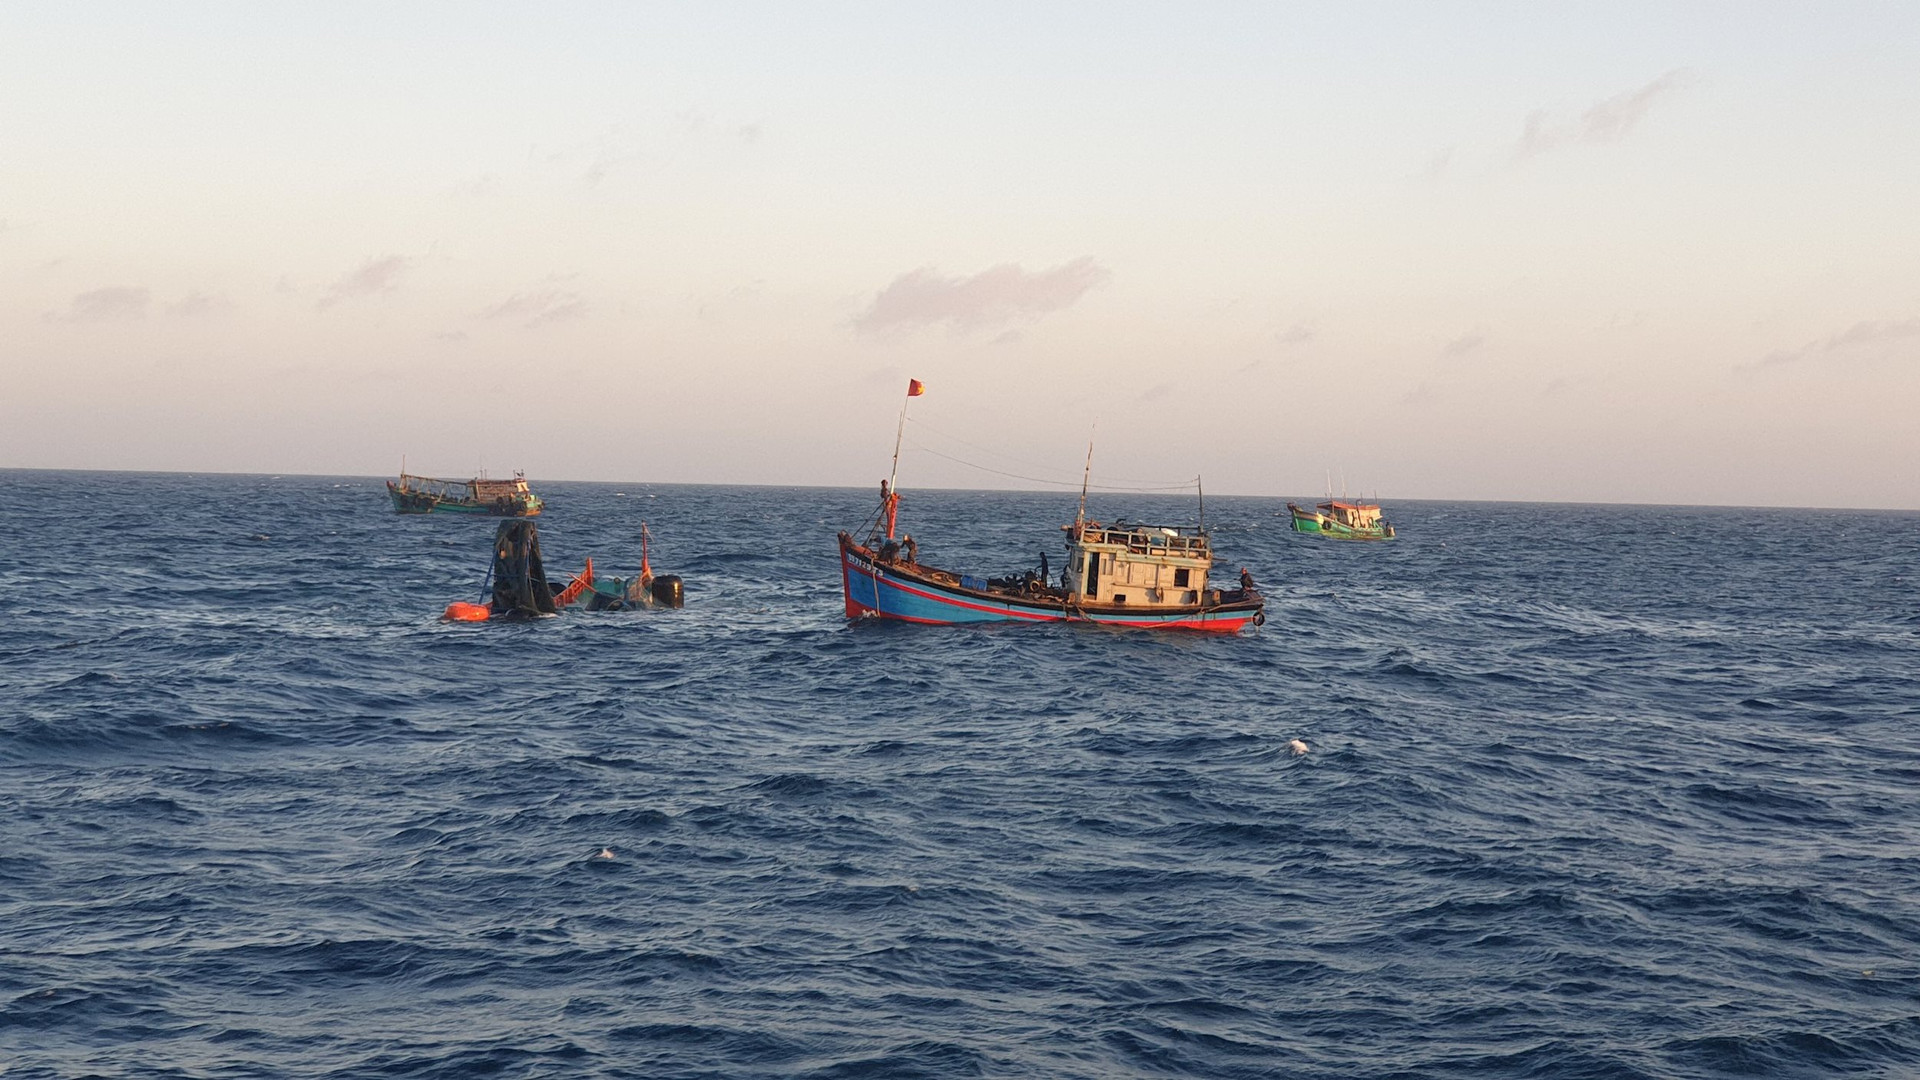 Tiếp nhận 01 thi thể ngư dân trên tàu cá BT 93998 TS bị nạn trên biển Côn Đảo